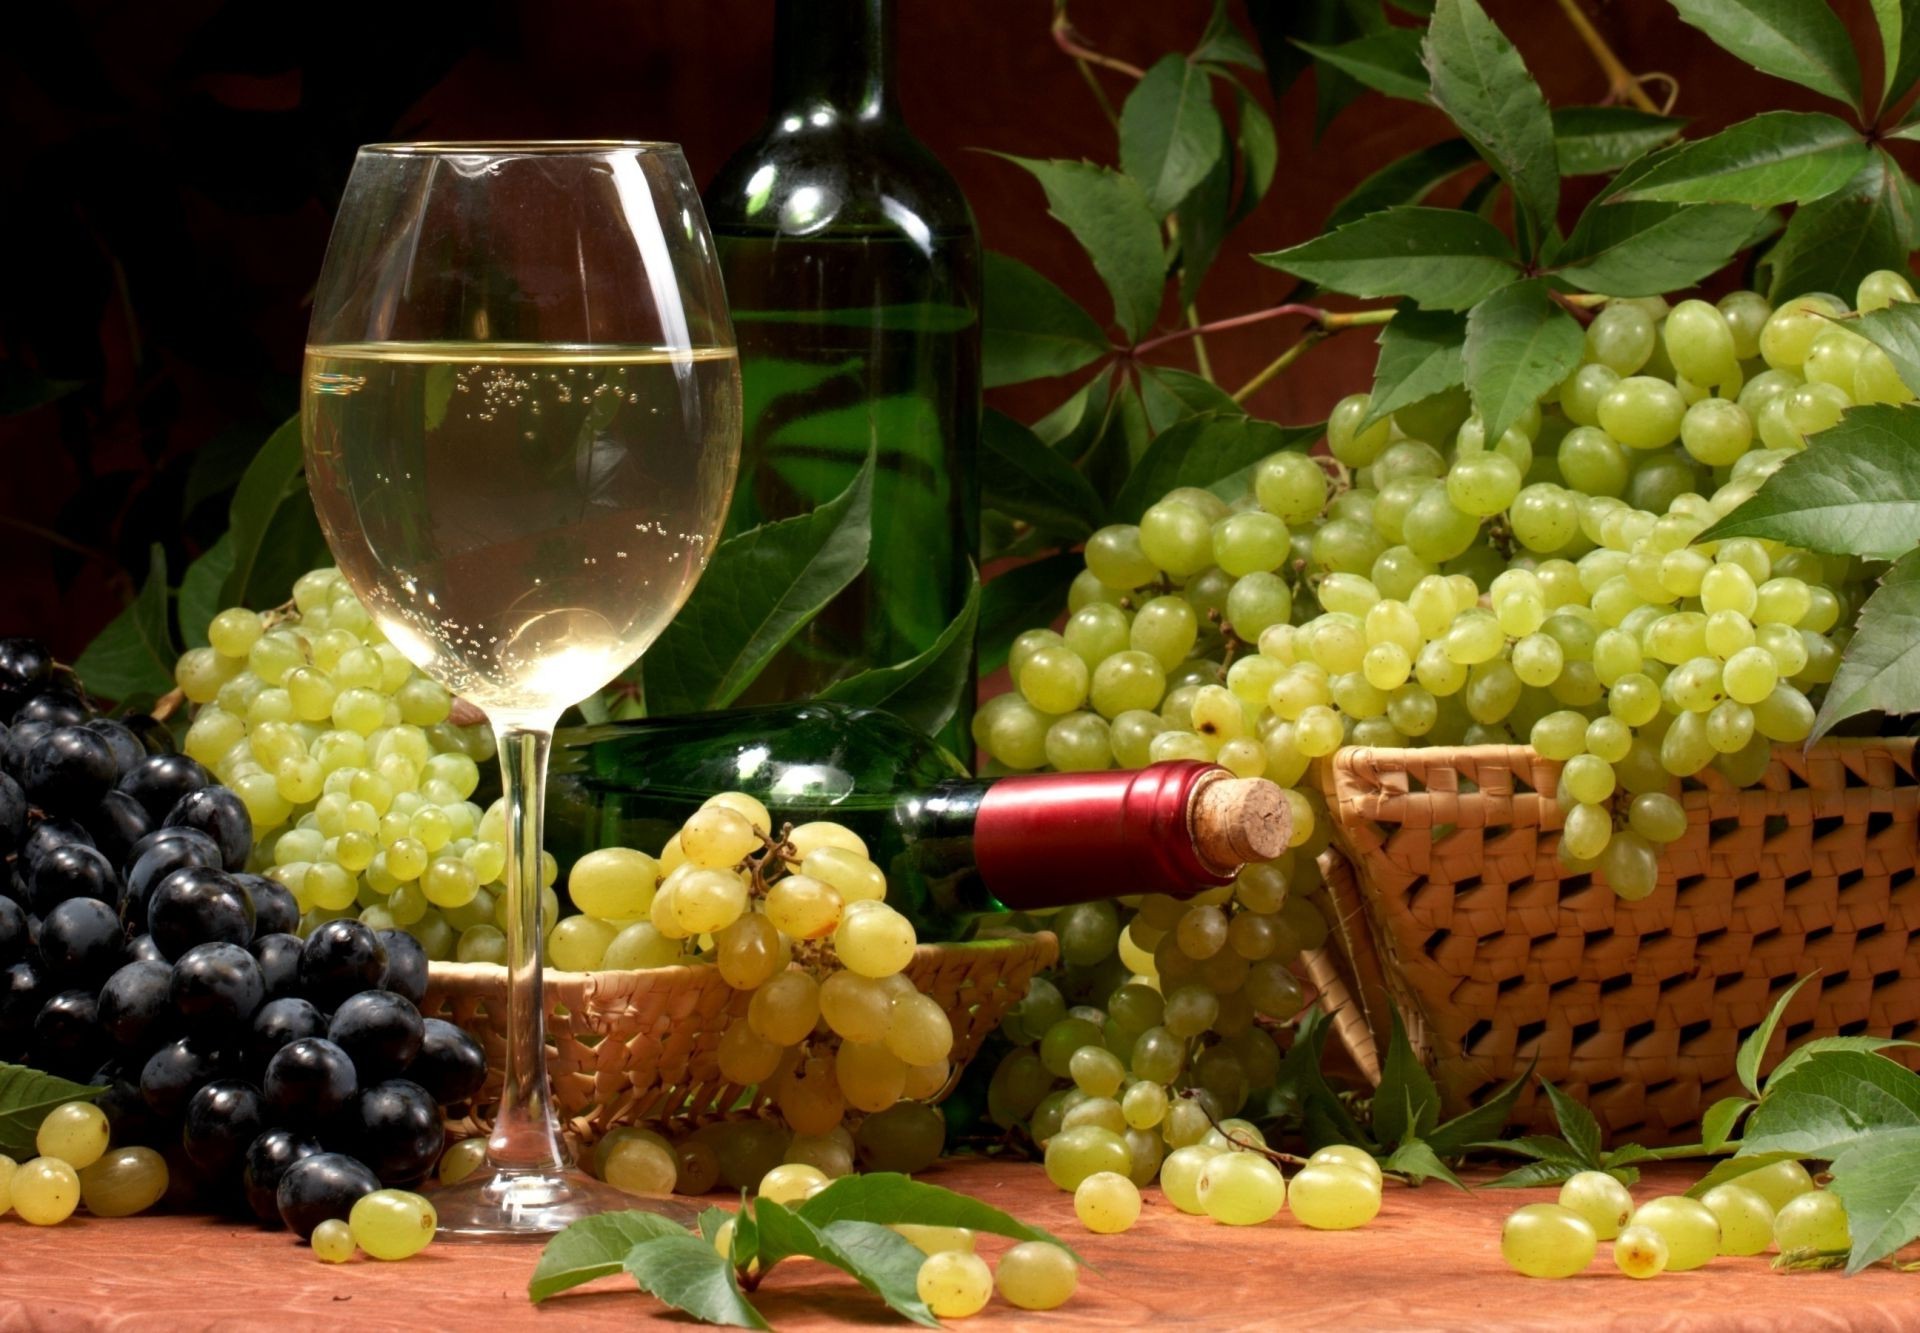 сок вина виноград винзавод вайн фрукты грейпвайн еда виноградарство виноградник кластер пастбище стекло сельское хозяйство осень рынок пить алкоголь расти вкус